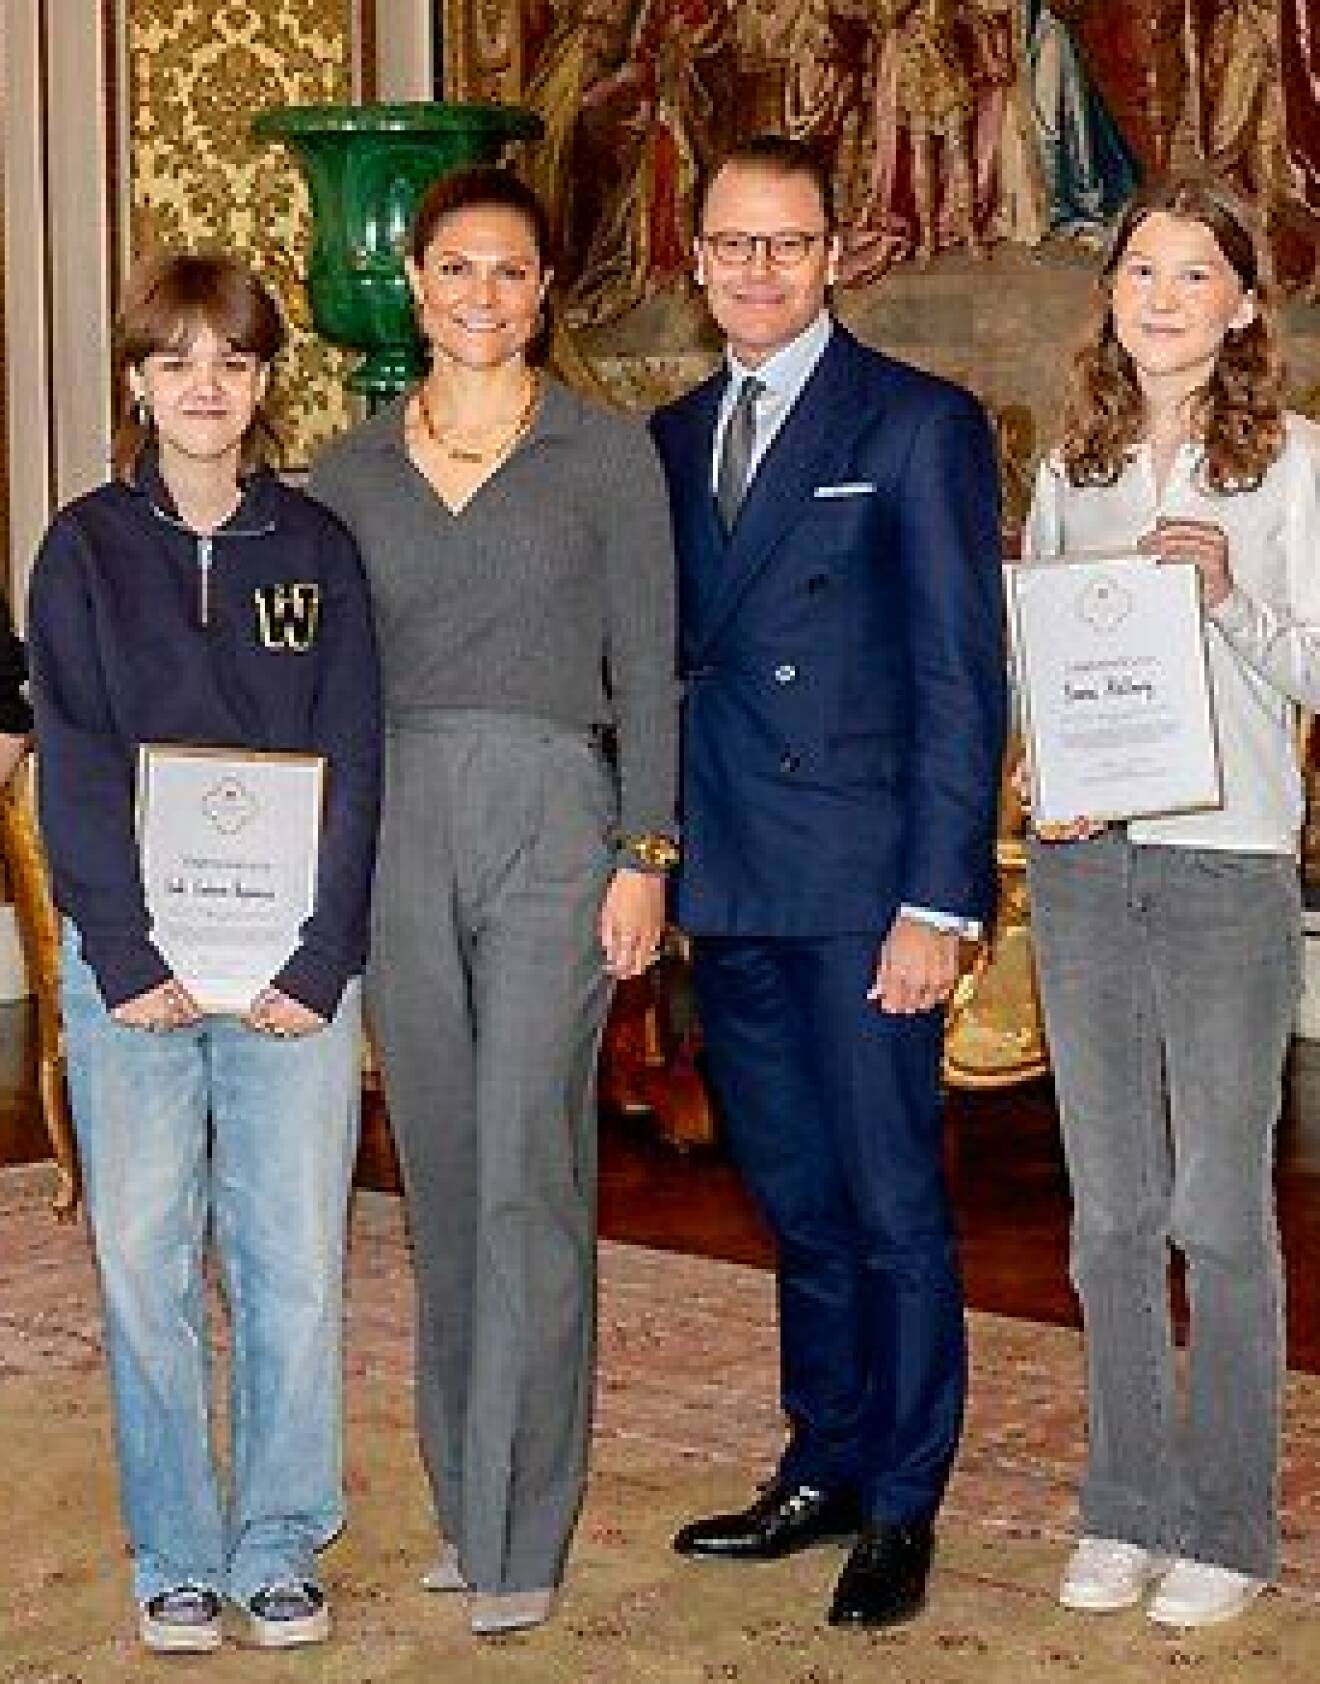 Kronprinsessan Victoria och prins Daniel med två medlemmar av Ungdomsrådet som stöttar Kronprinsessparets stiftelse